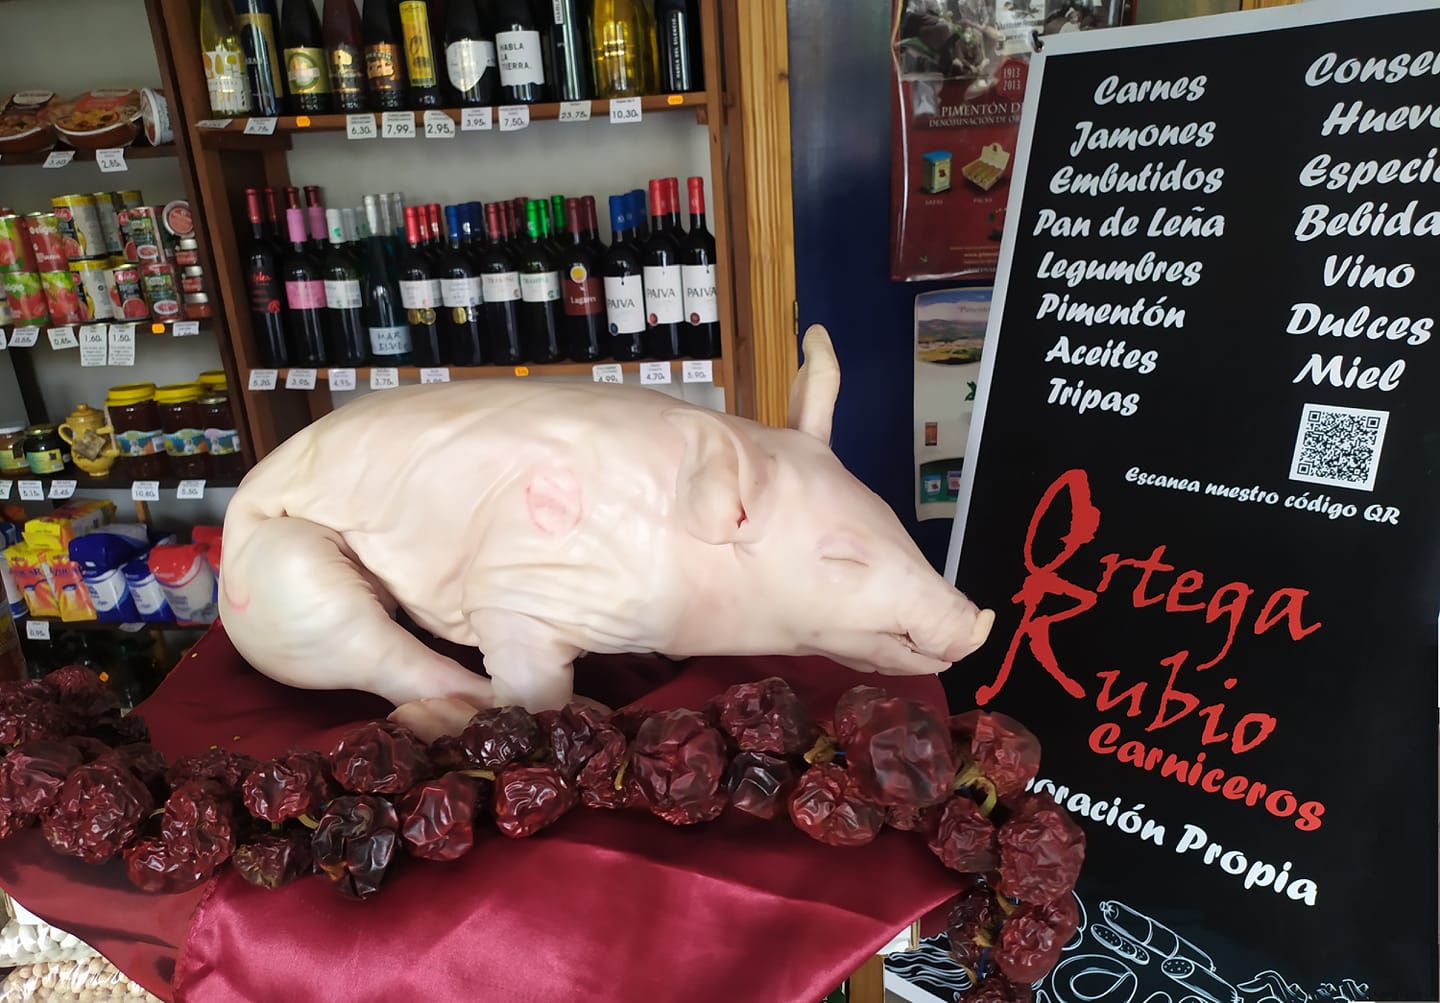 Productos extremeños Carnicería en Trujillo Ortega Rubio